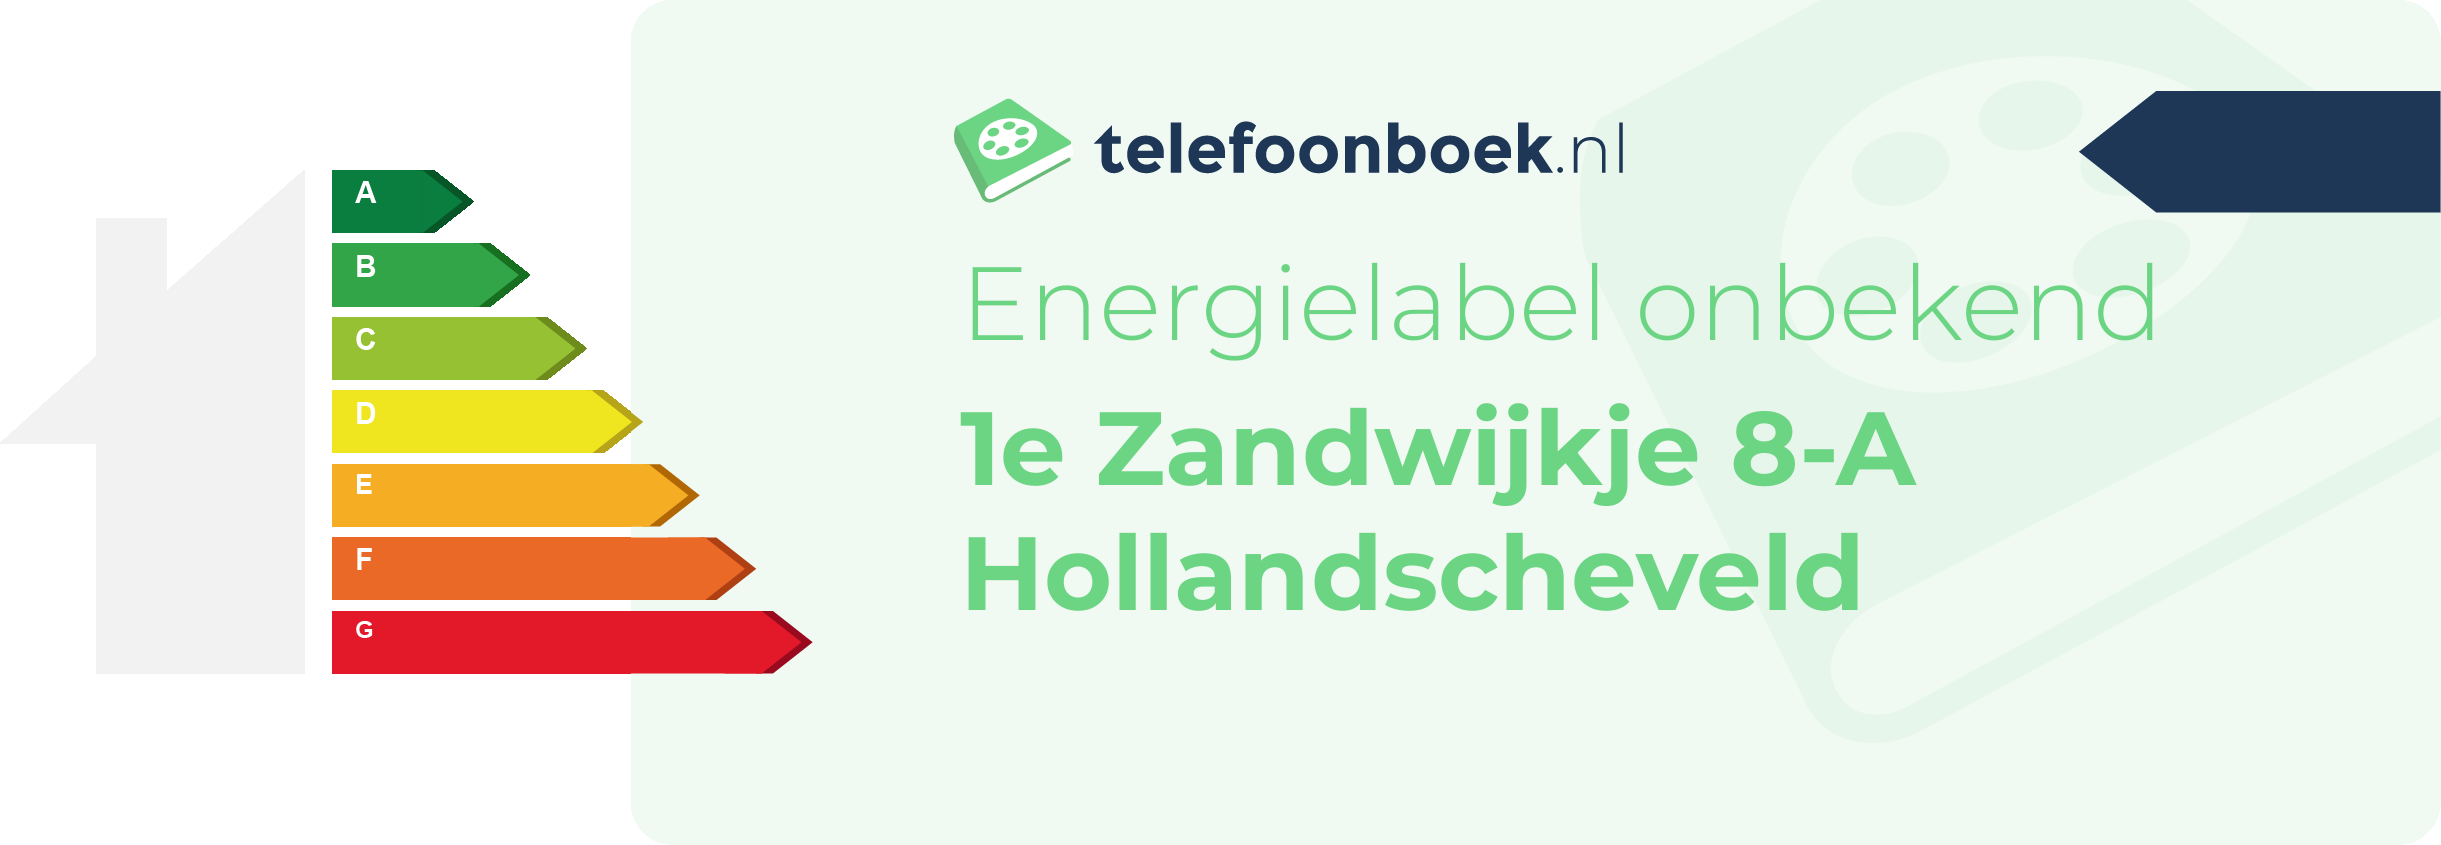 Energielabel 1e Zandwijkje 8-A Hollandscheveld